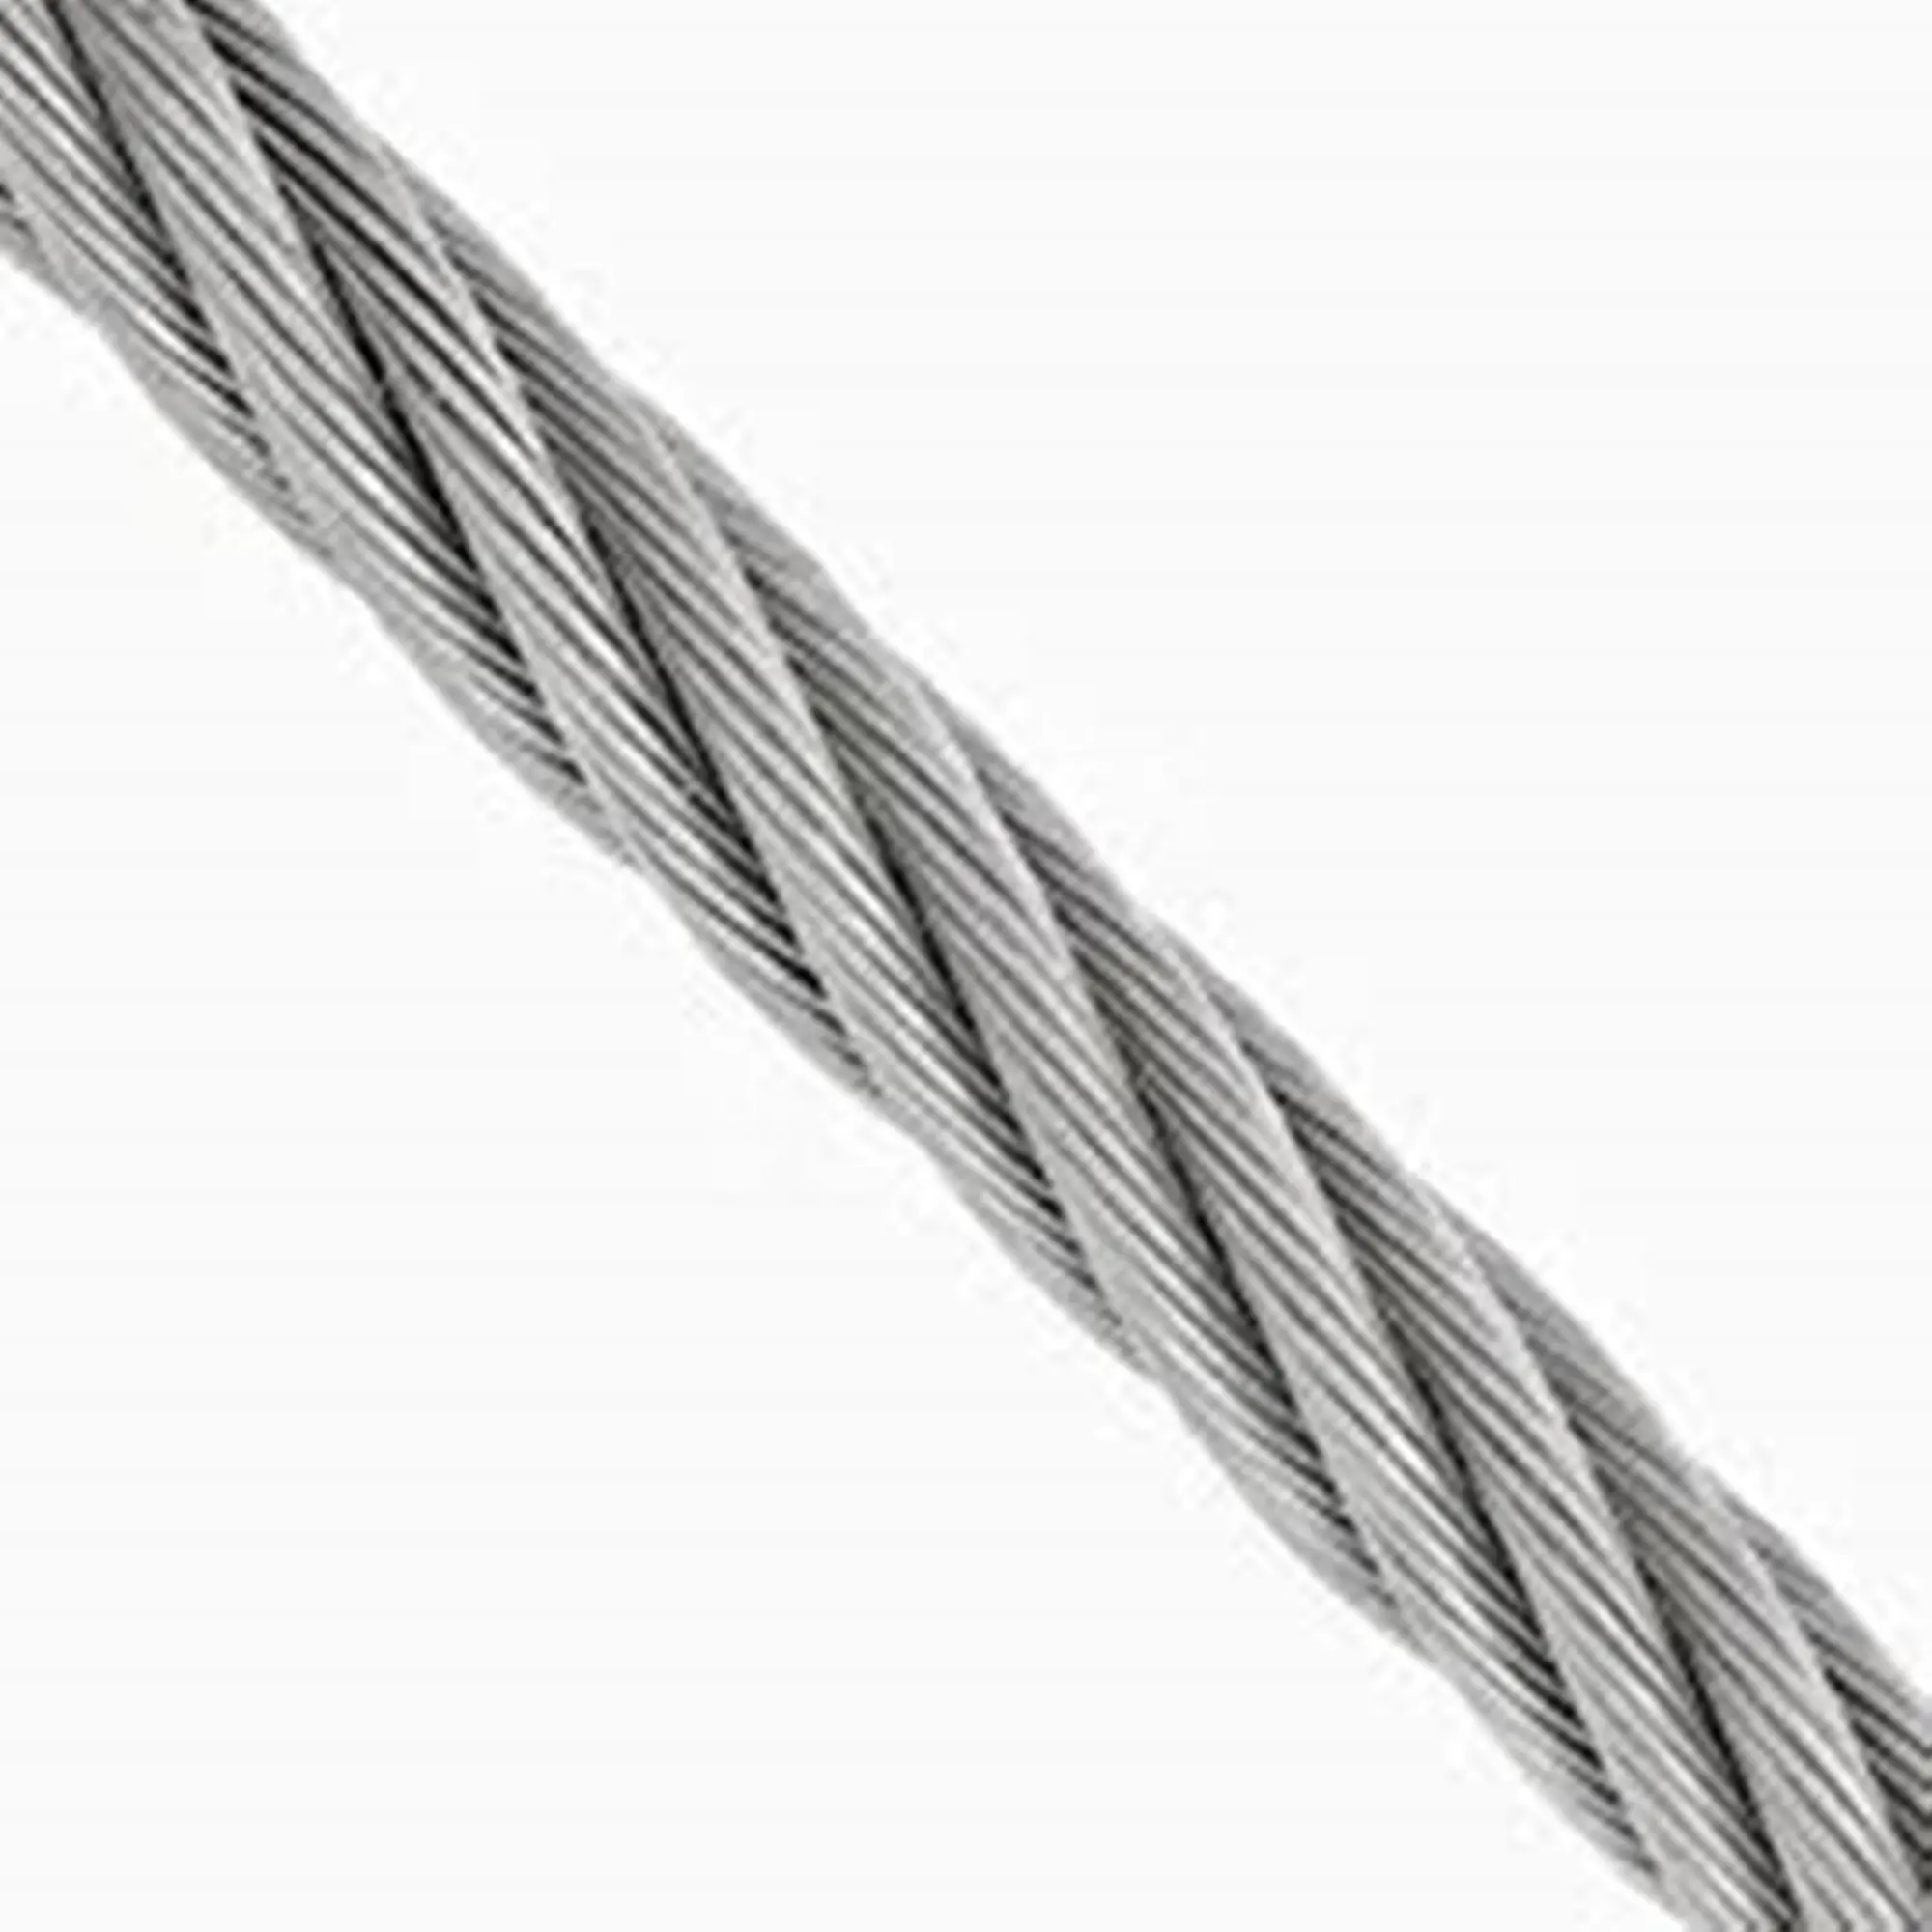 Câble métallique en acier inoxydable AISI 304 316 pour Machine/Marine/fournisseur de pêche